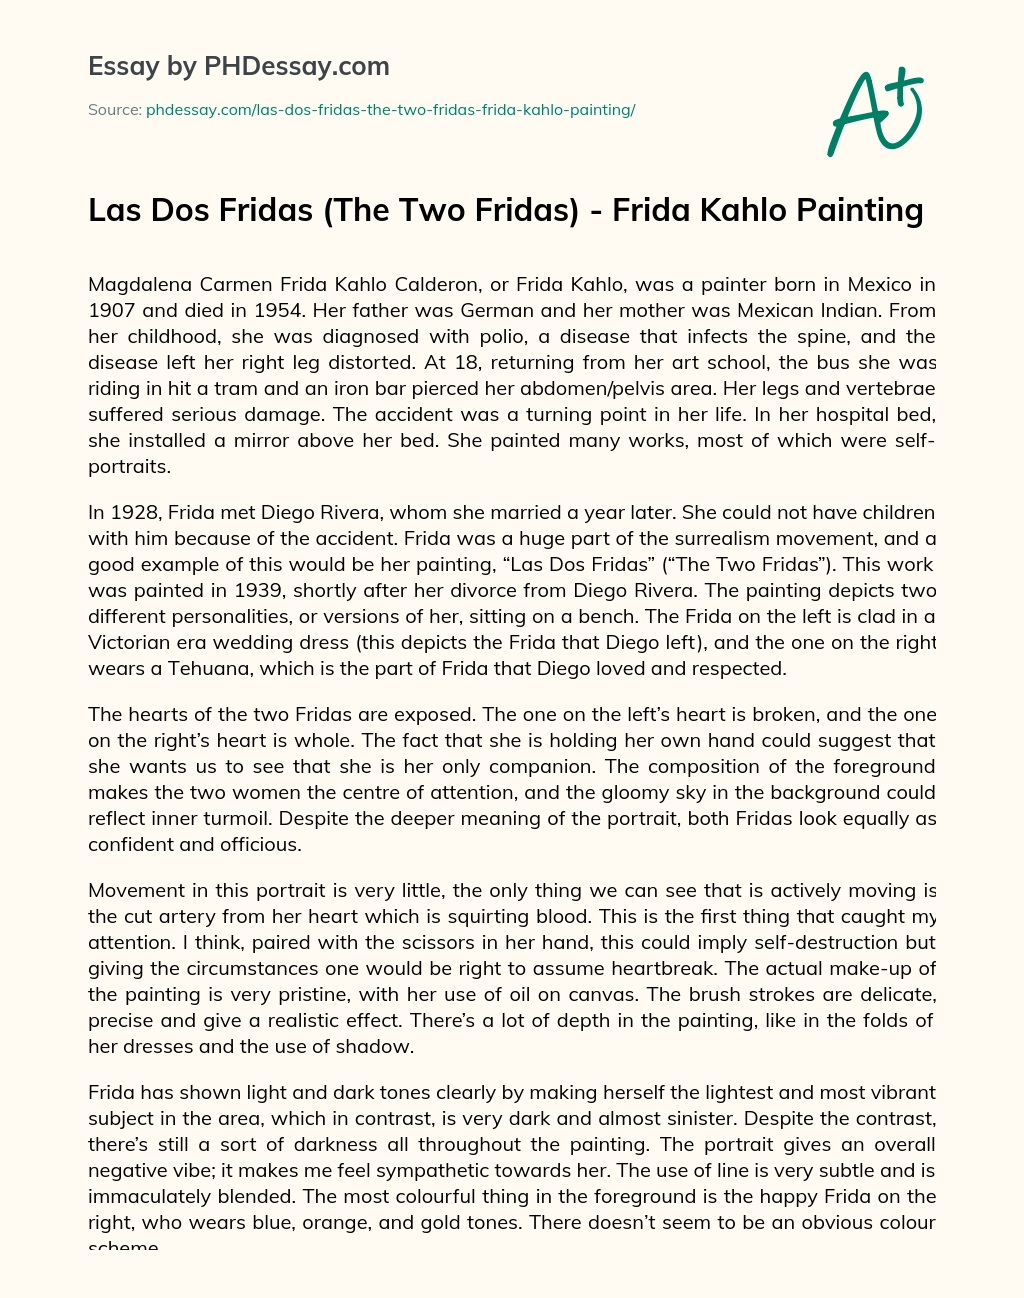 Las Dos Fridas (The Two Fridas) – Frida Kahlo Painting essay